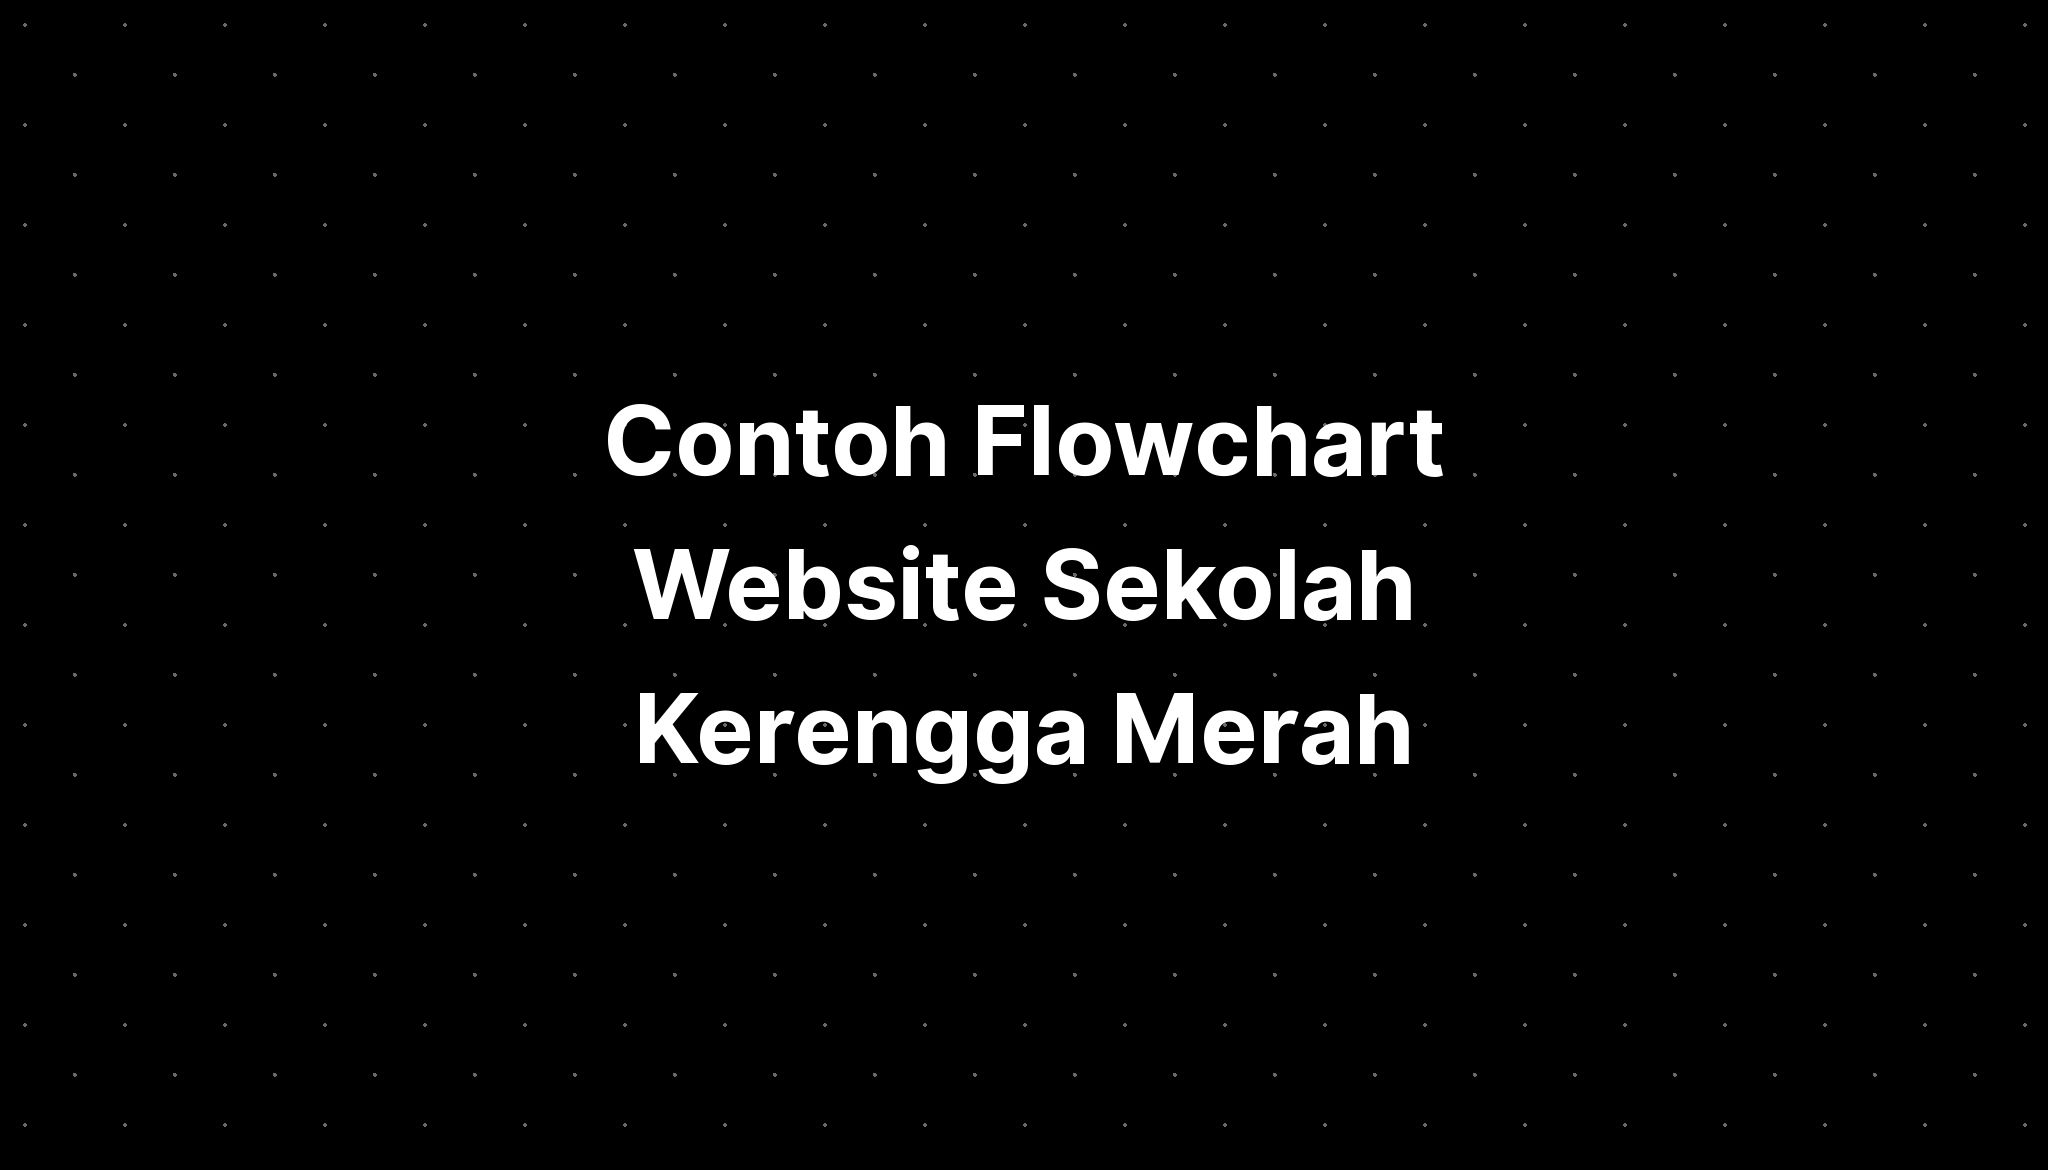 Contoh Flowchart Website Sekolah Kerengga Merah Putih - IMAGESEE